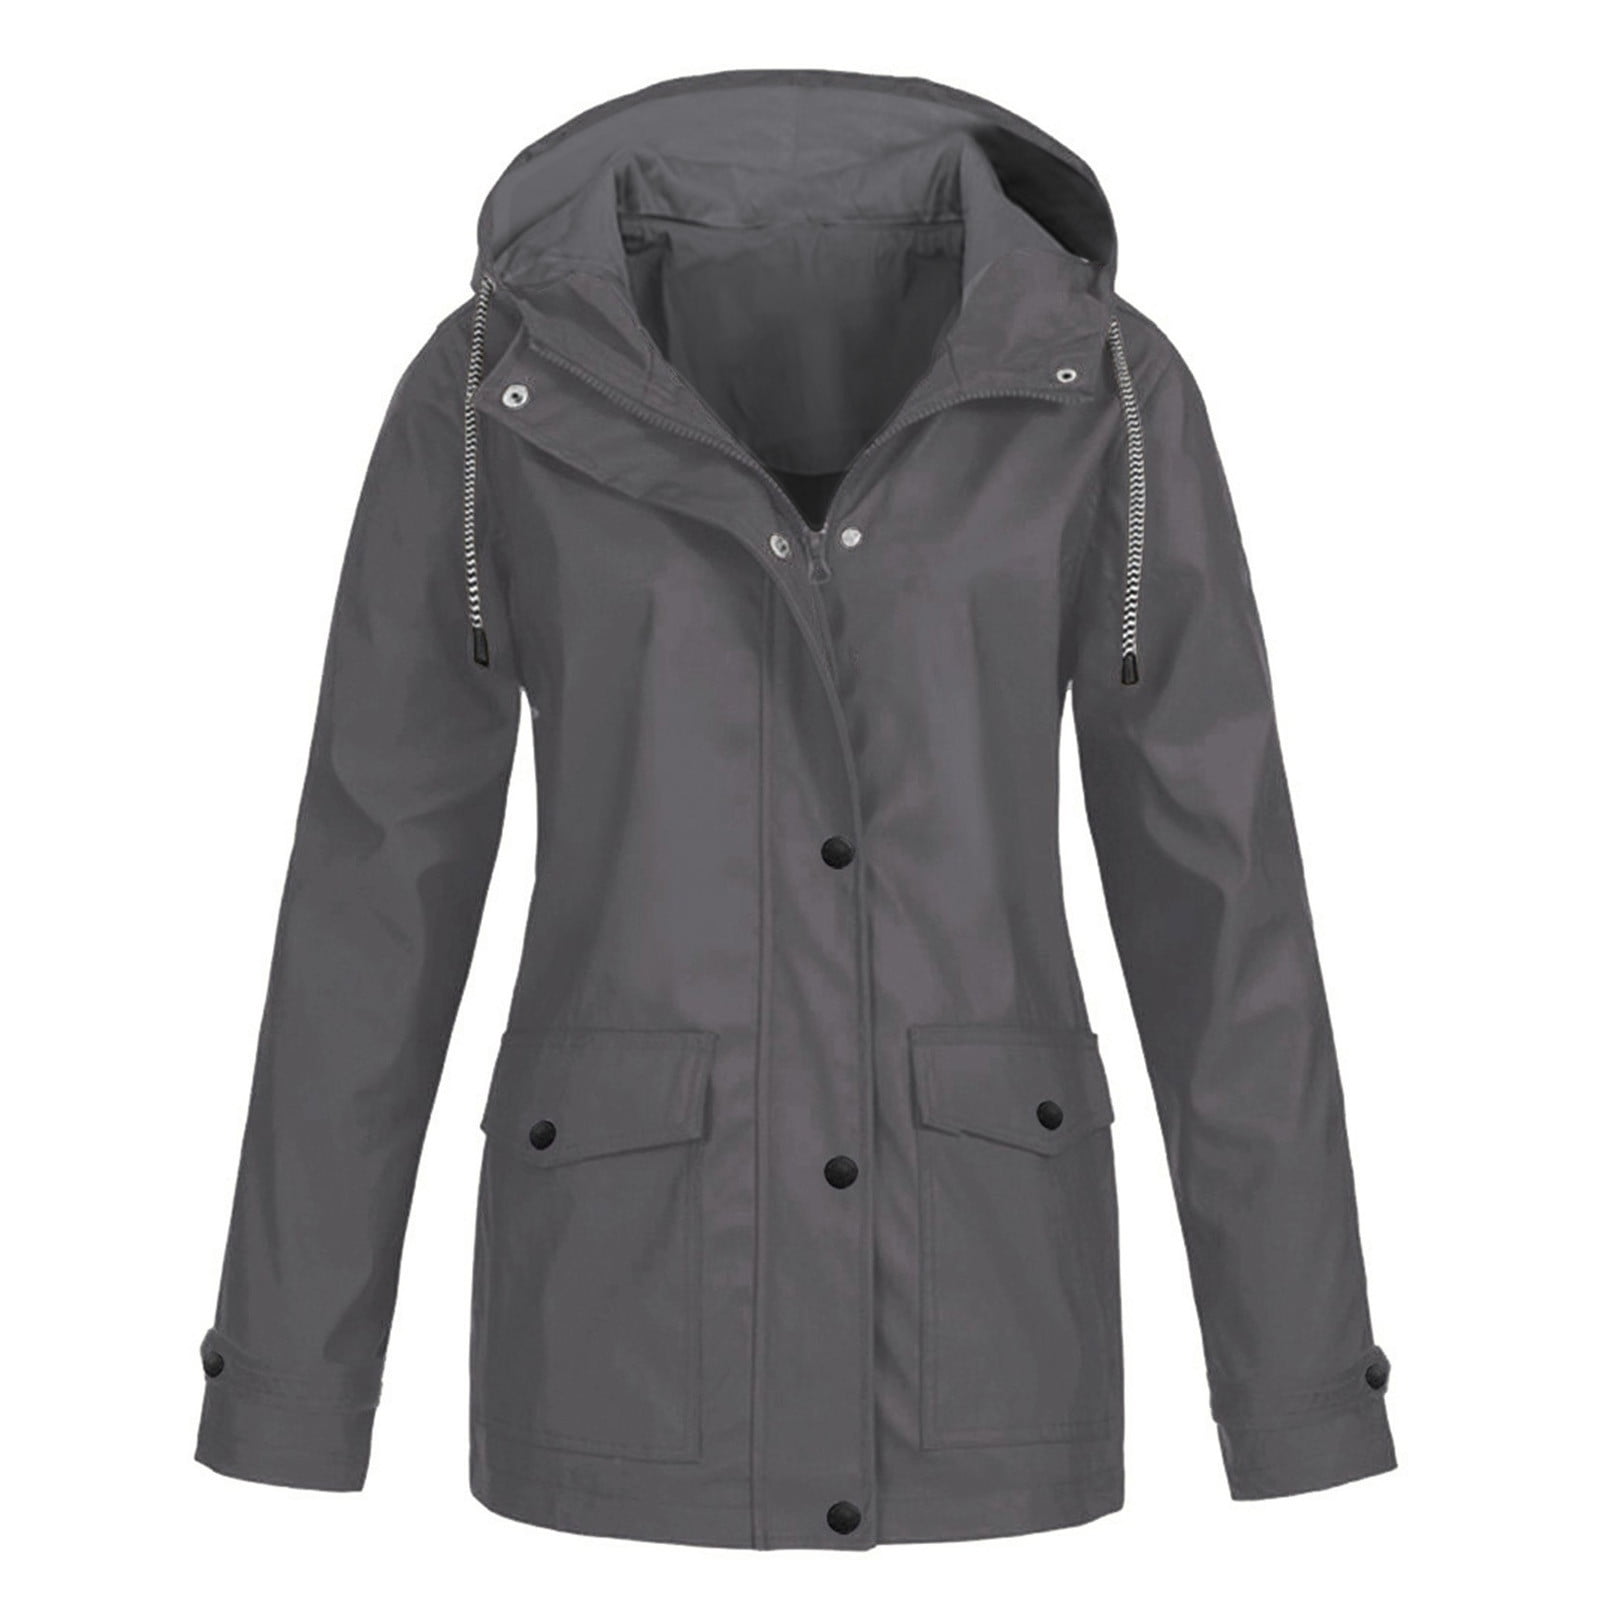 Fanxing Clearance Deals Women's Raincoats Waterproof Hooded Plus Size ...